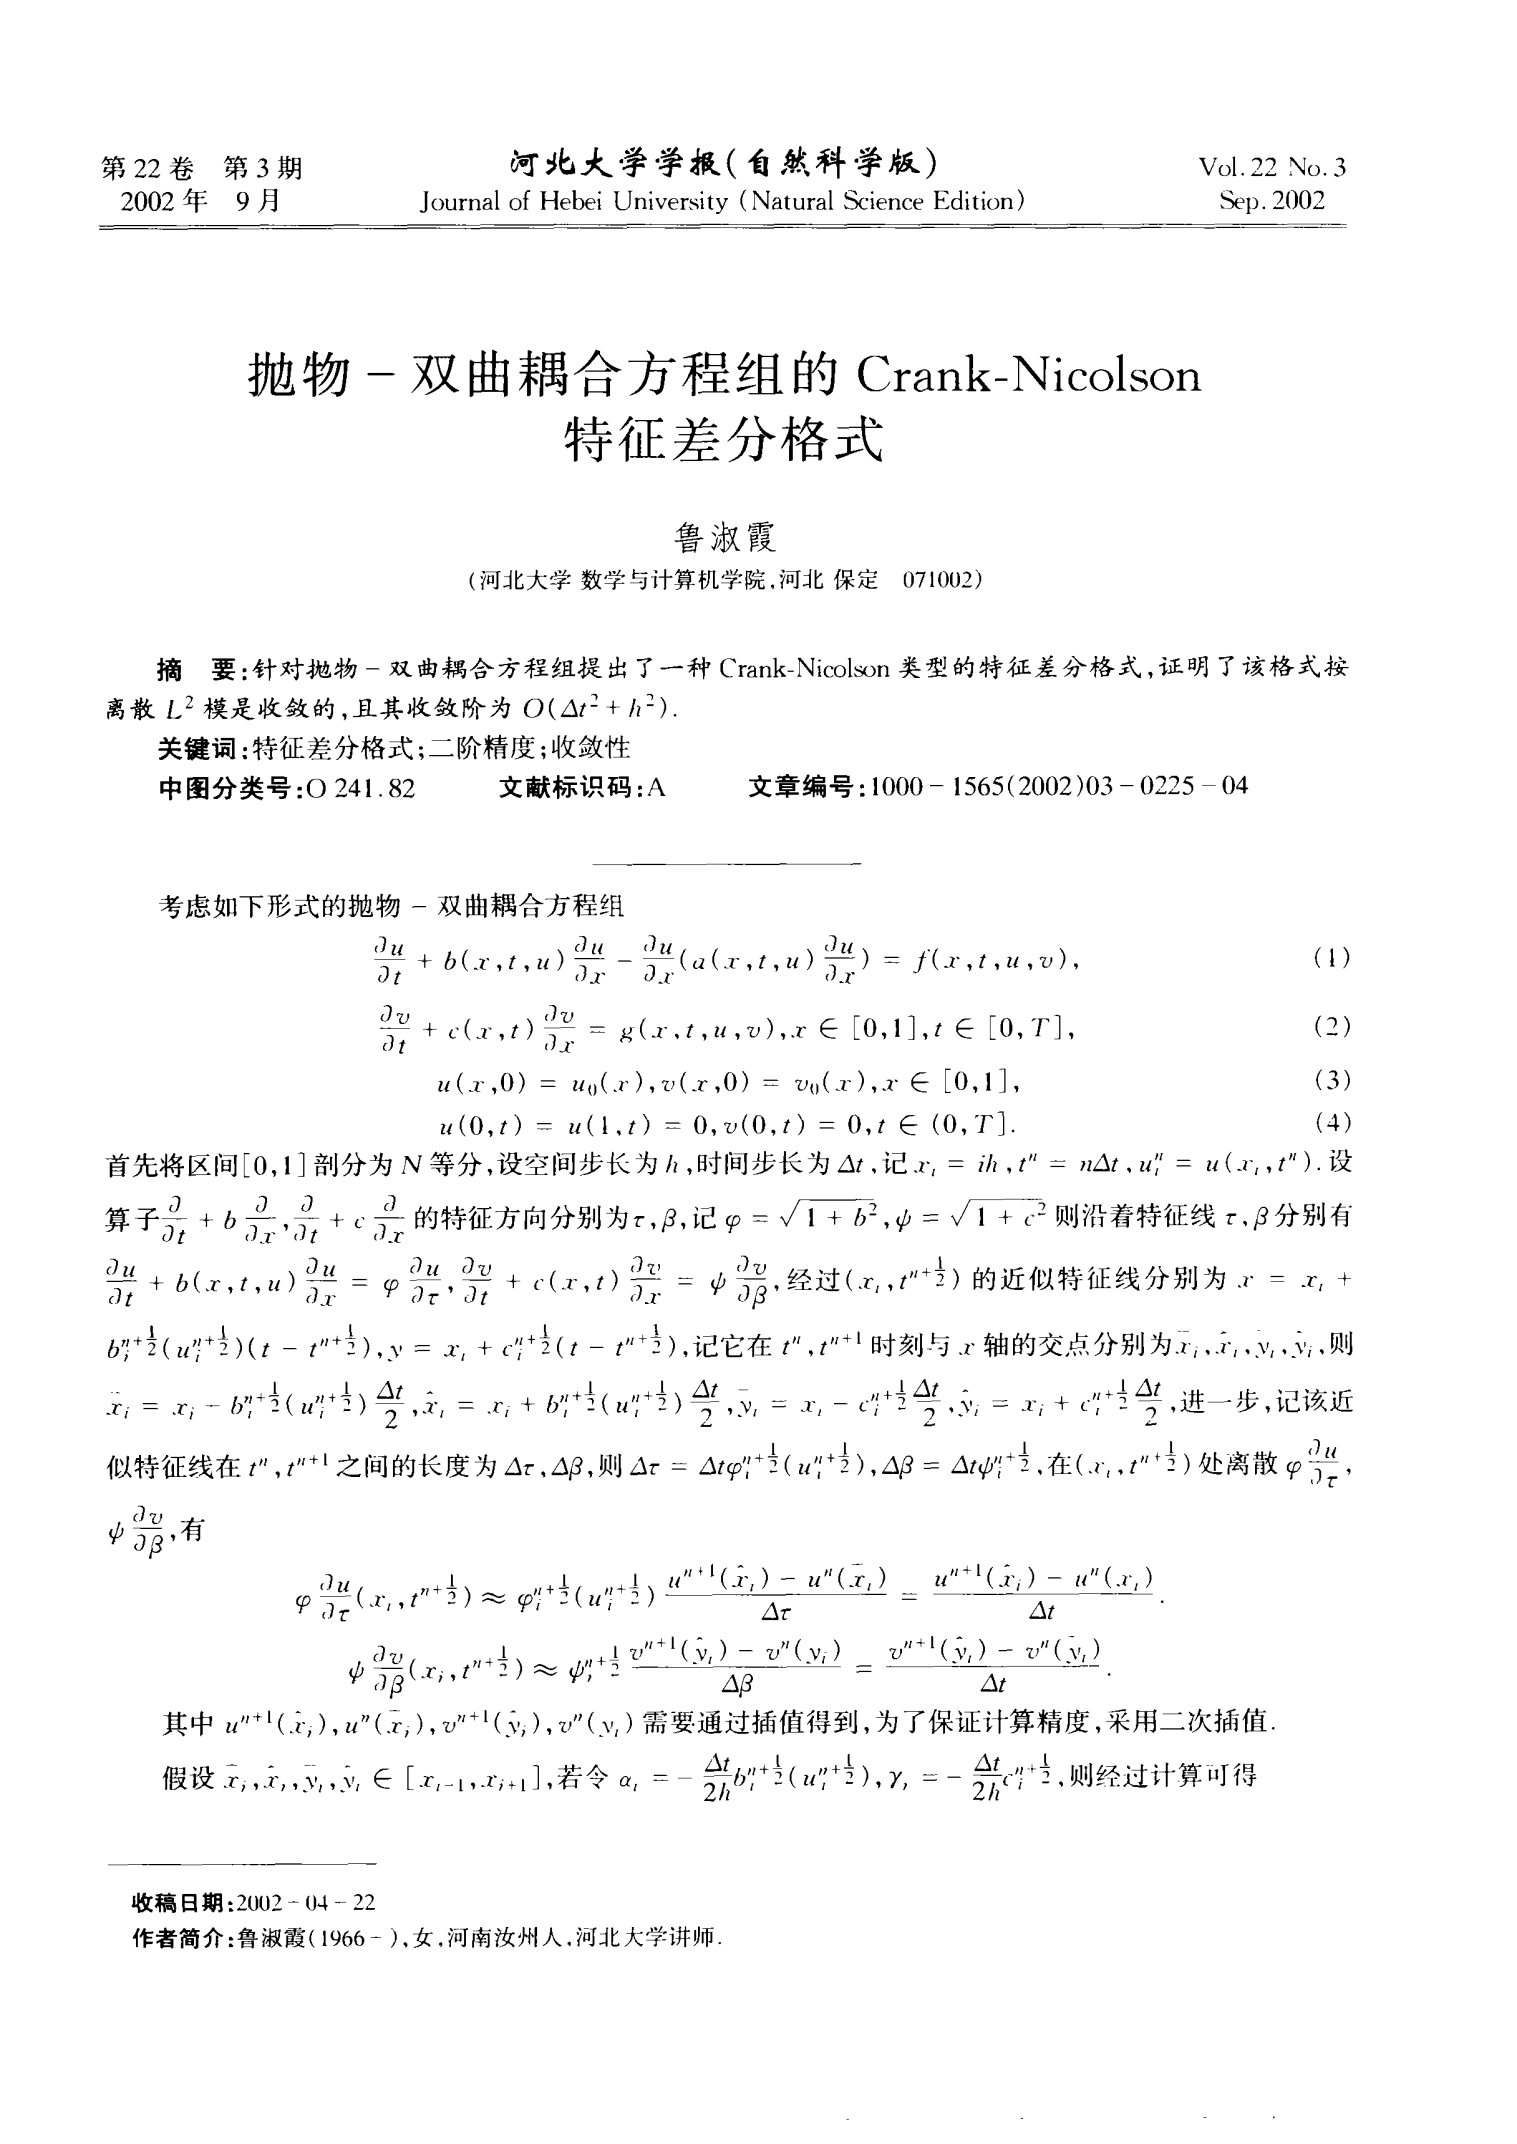 抛物—双曲耦合方程组的Crank—Nicolson特征差分格式